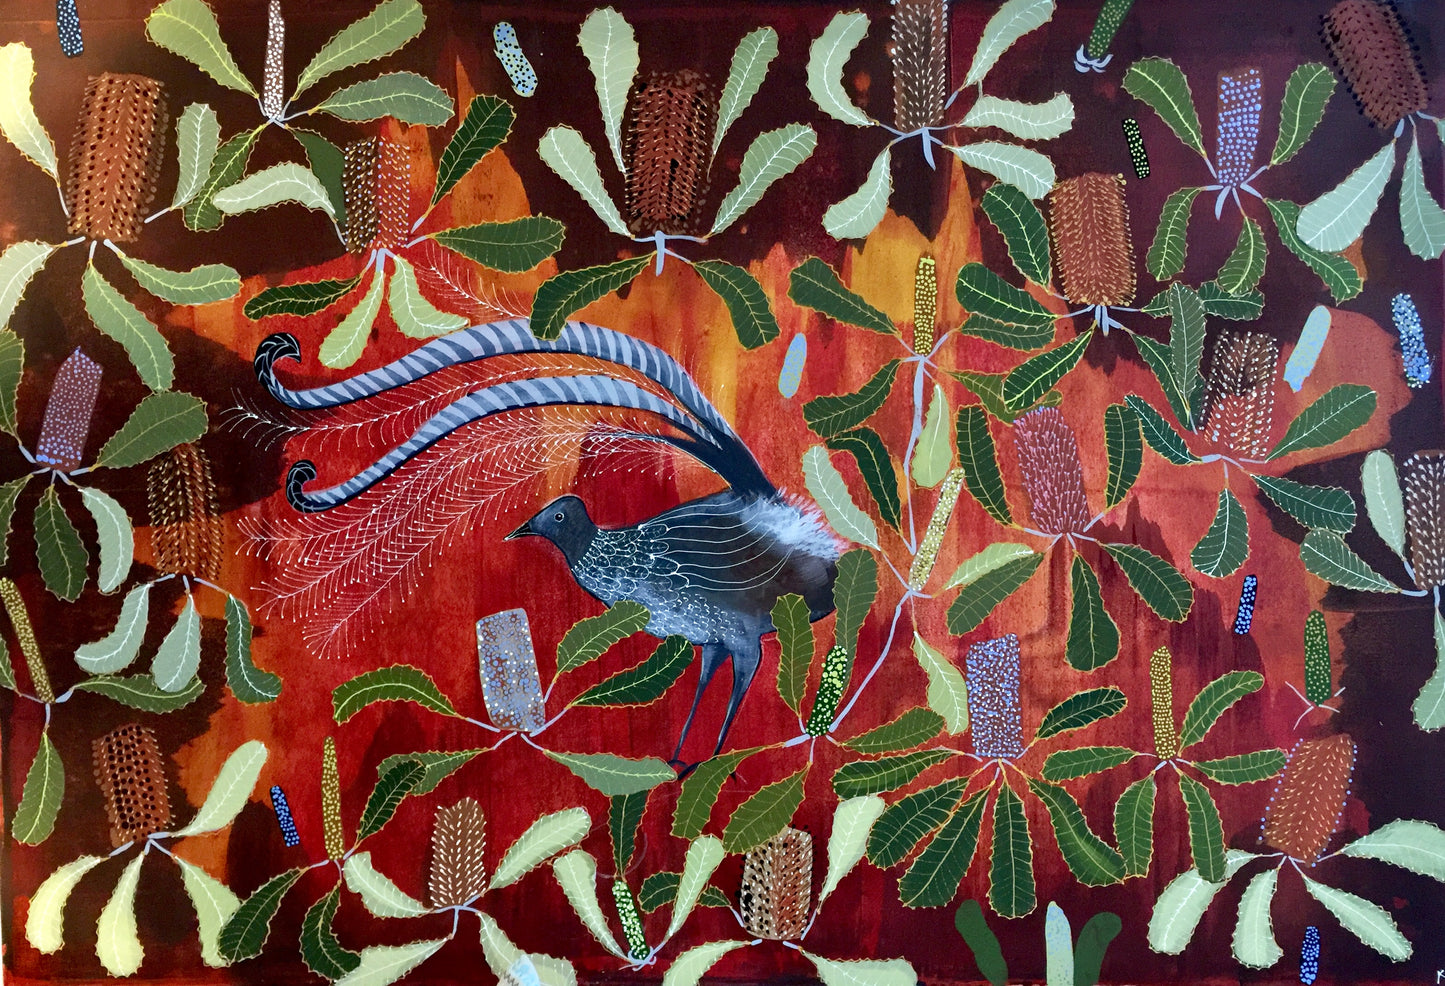 Lyrebird #2